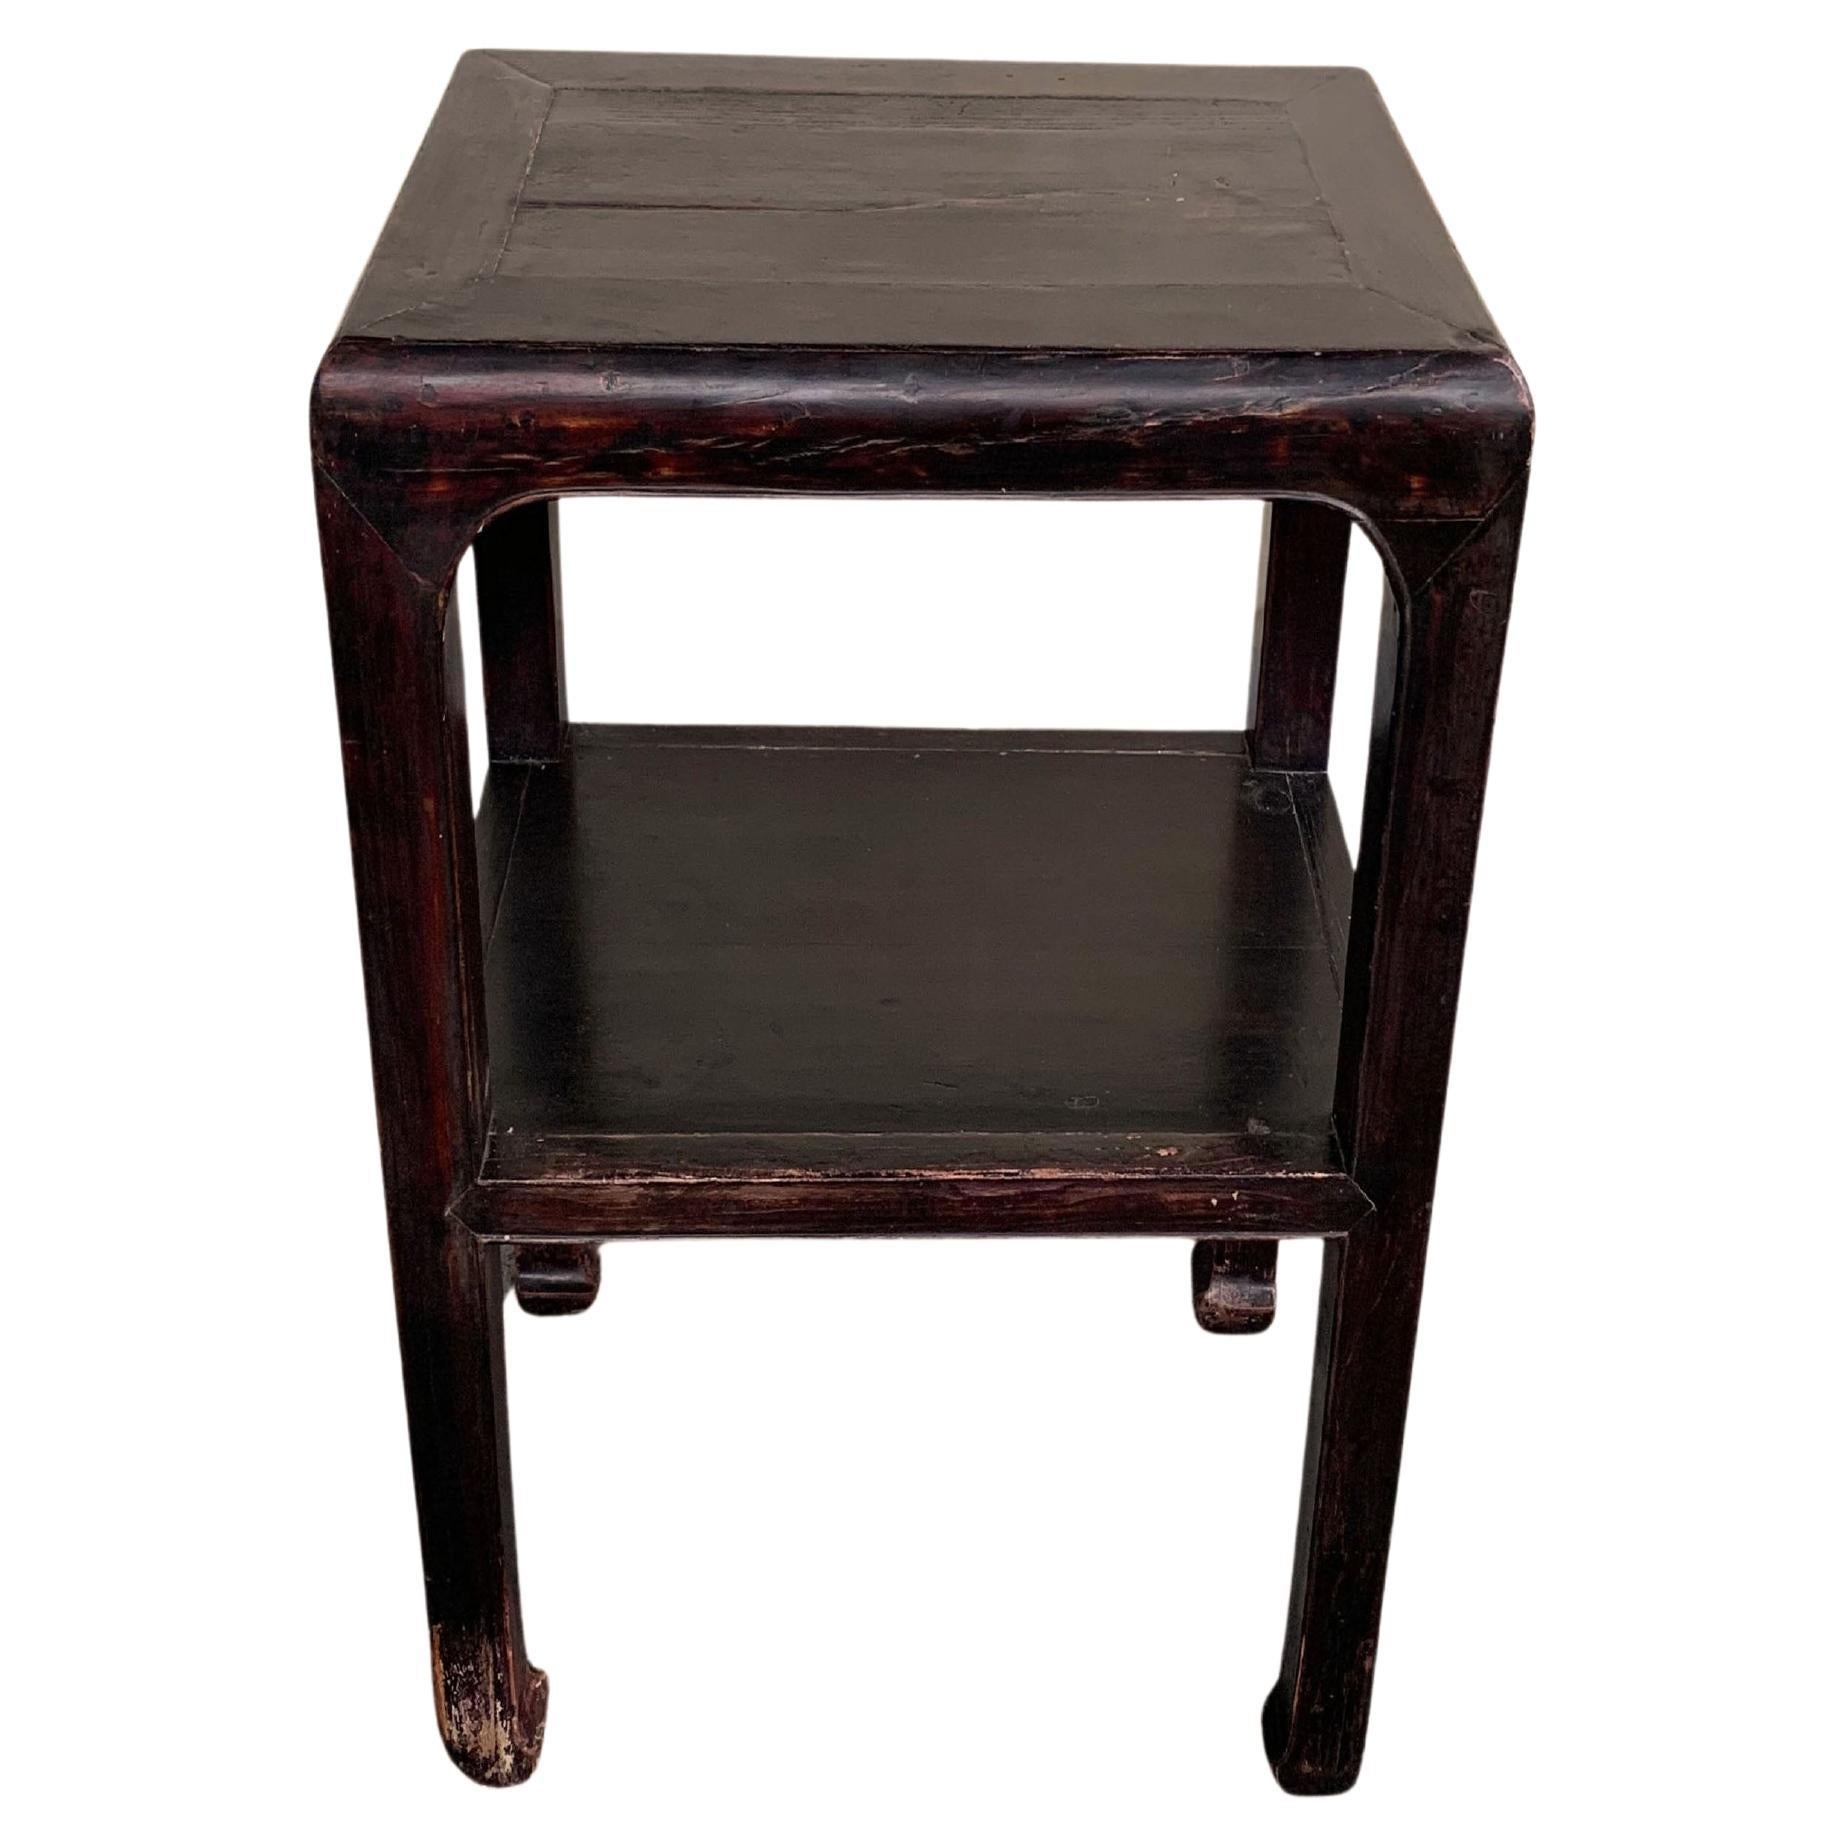 Table chinoise en bois laqué avec pieds incurvés, vers 1950